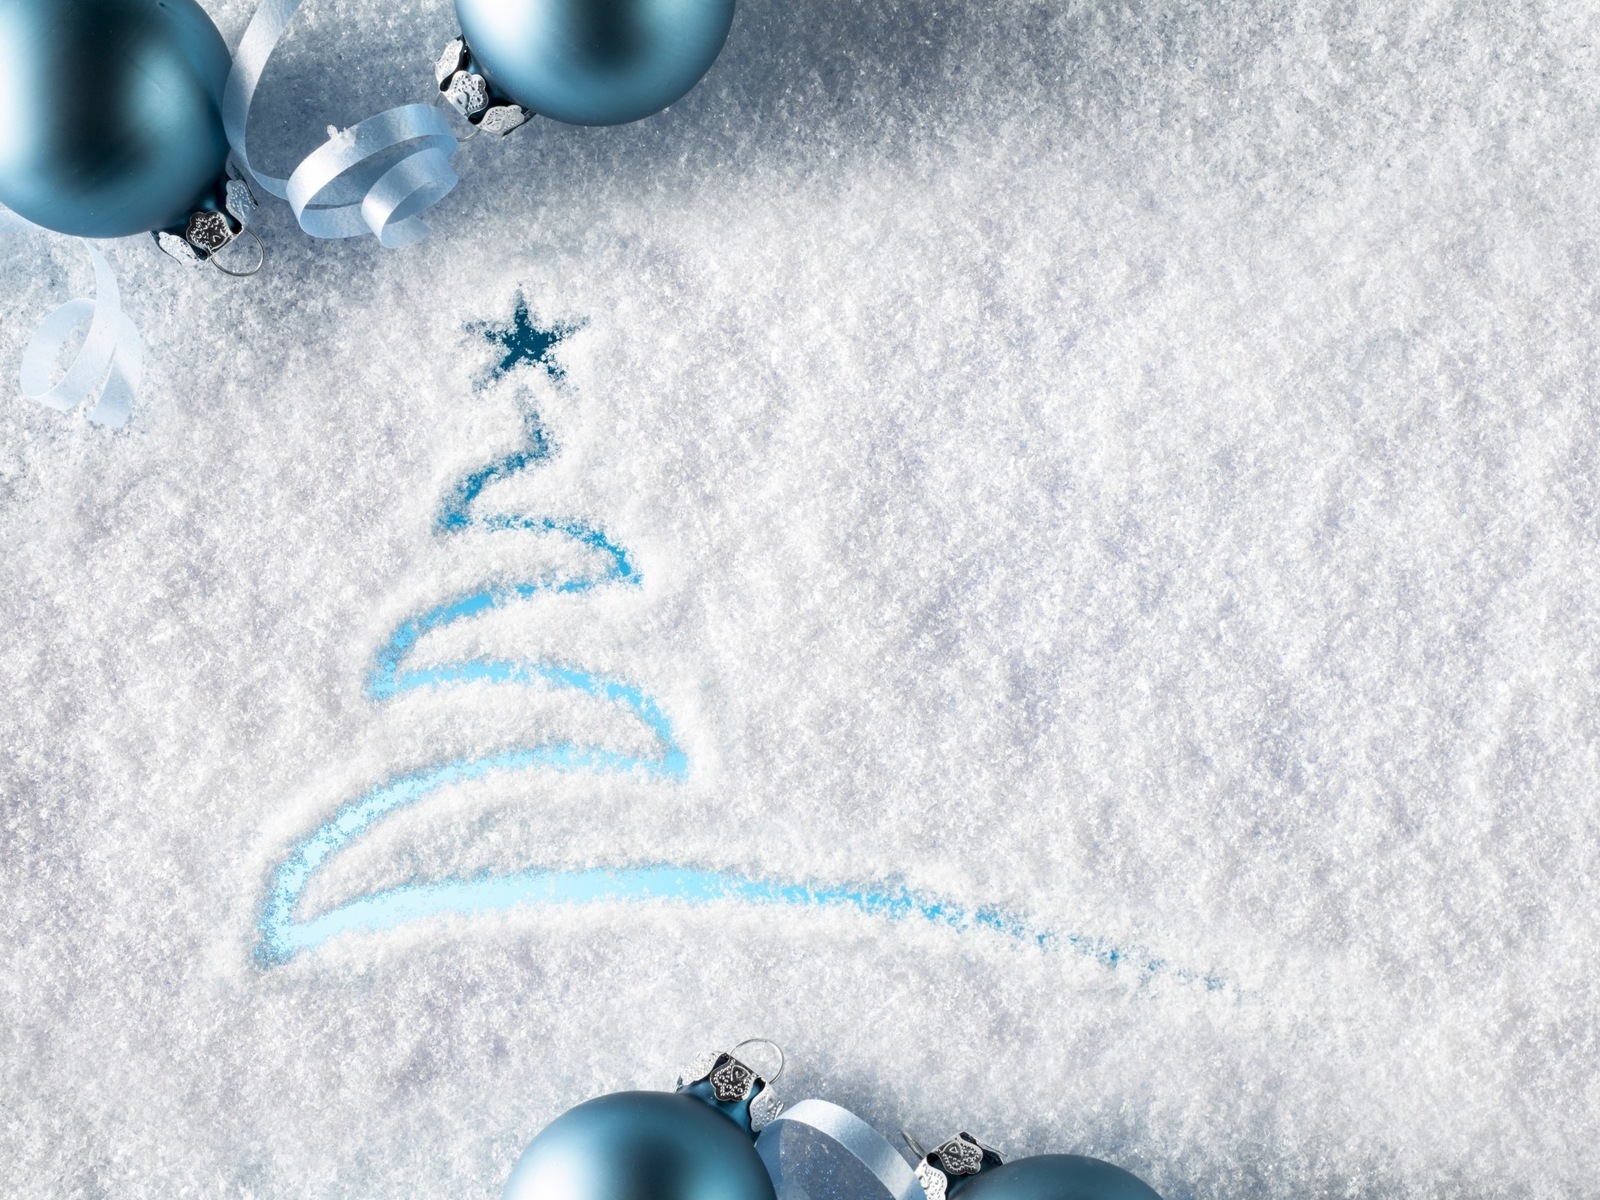 Скачать обои бесплатно Снег, Рождество (Christmas Xmas), Фон, Новый Год (New Year) картинка на рабочий стол ПК